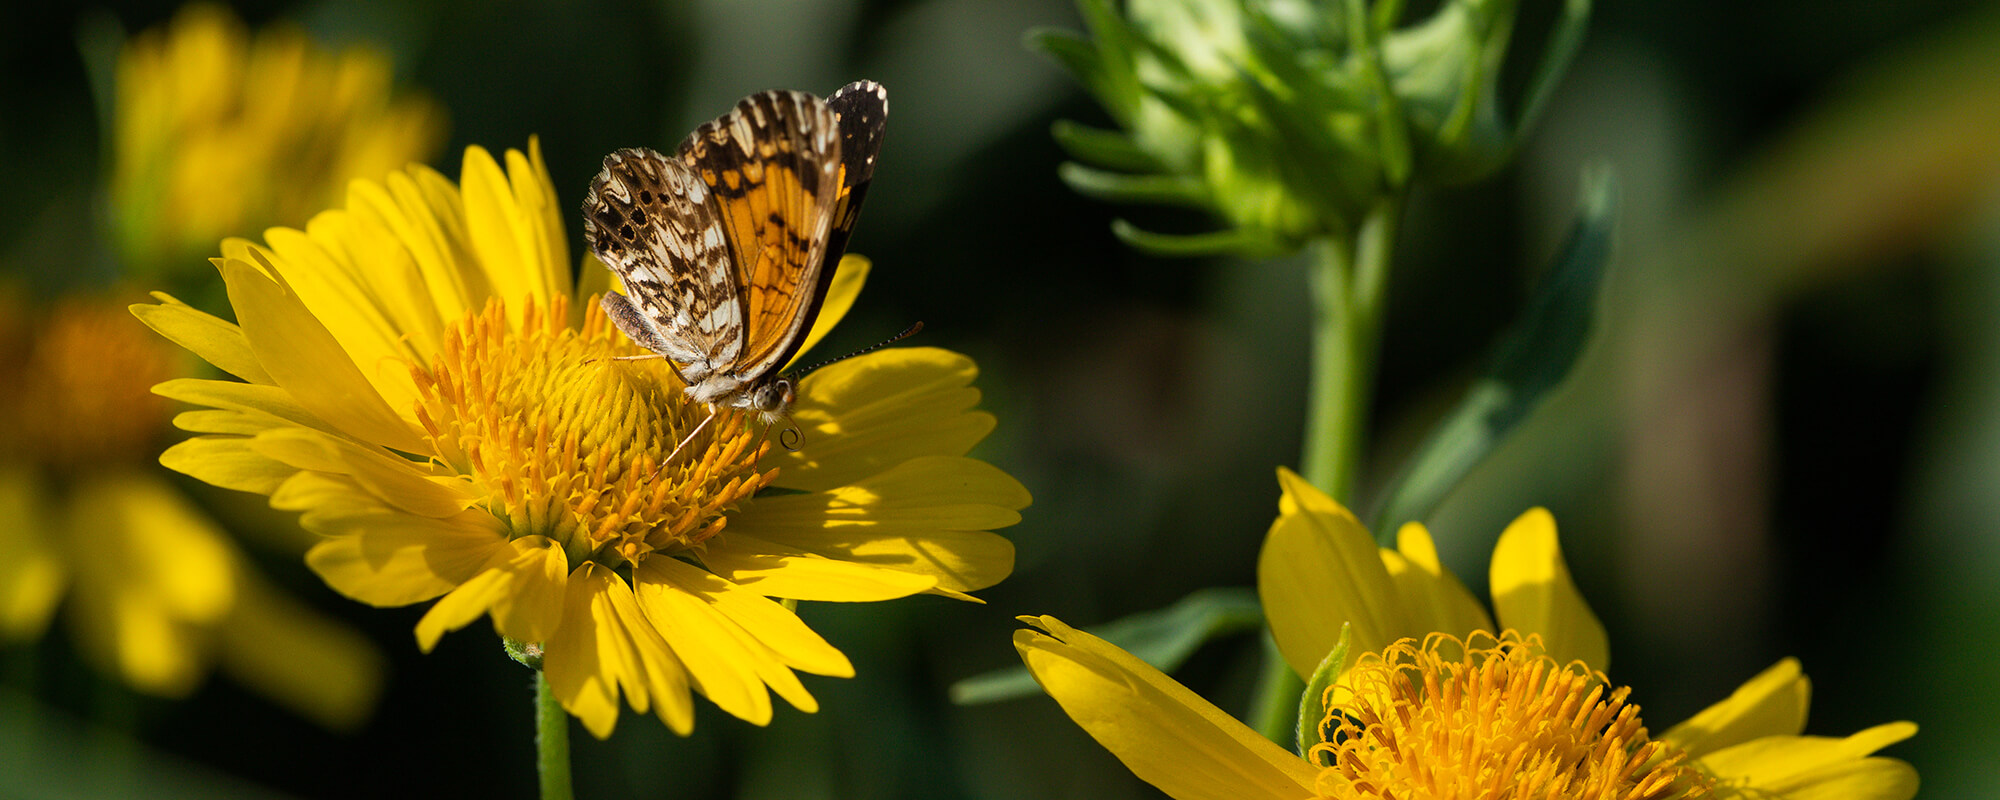 滑动者电源:三大原因蜜蜂、蝴蝶、蝙蝠和更多对牧场很重要